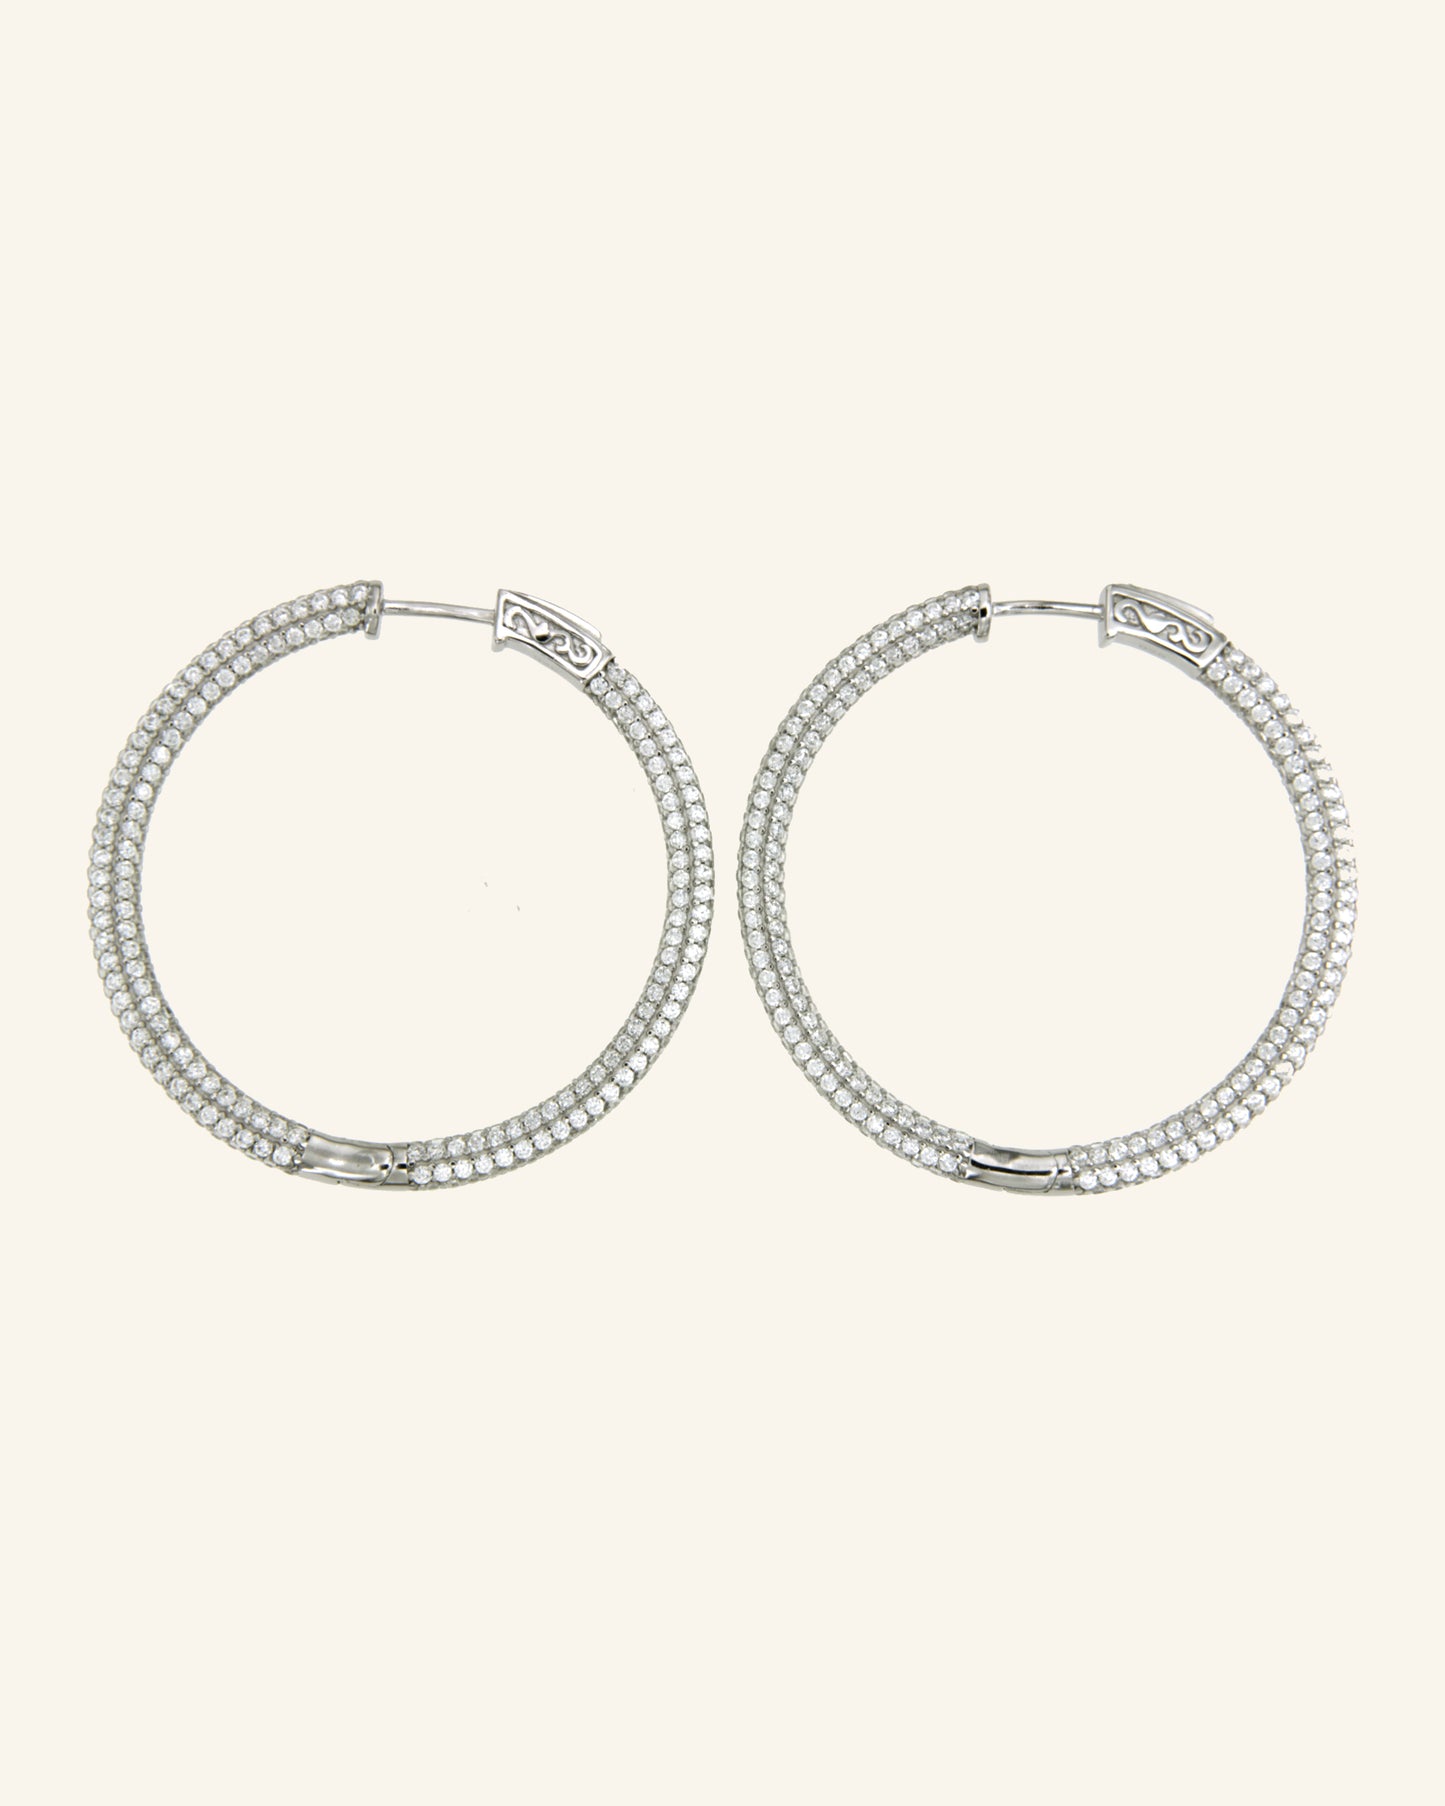 Silver Venus 3DG Hoop Earrings with Zircons